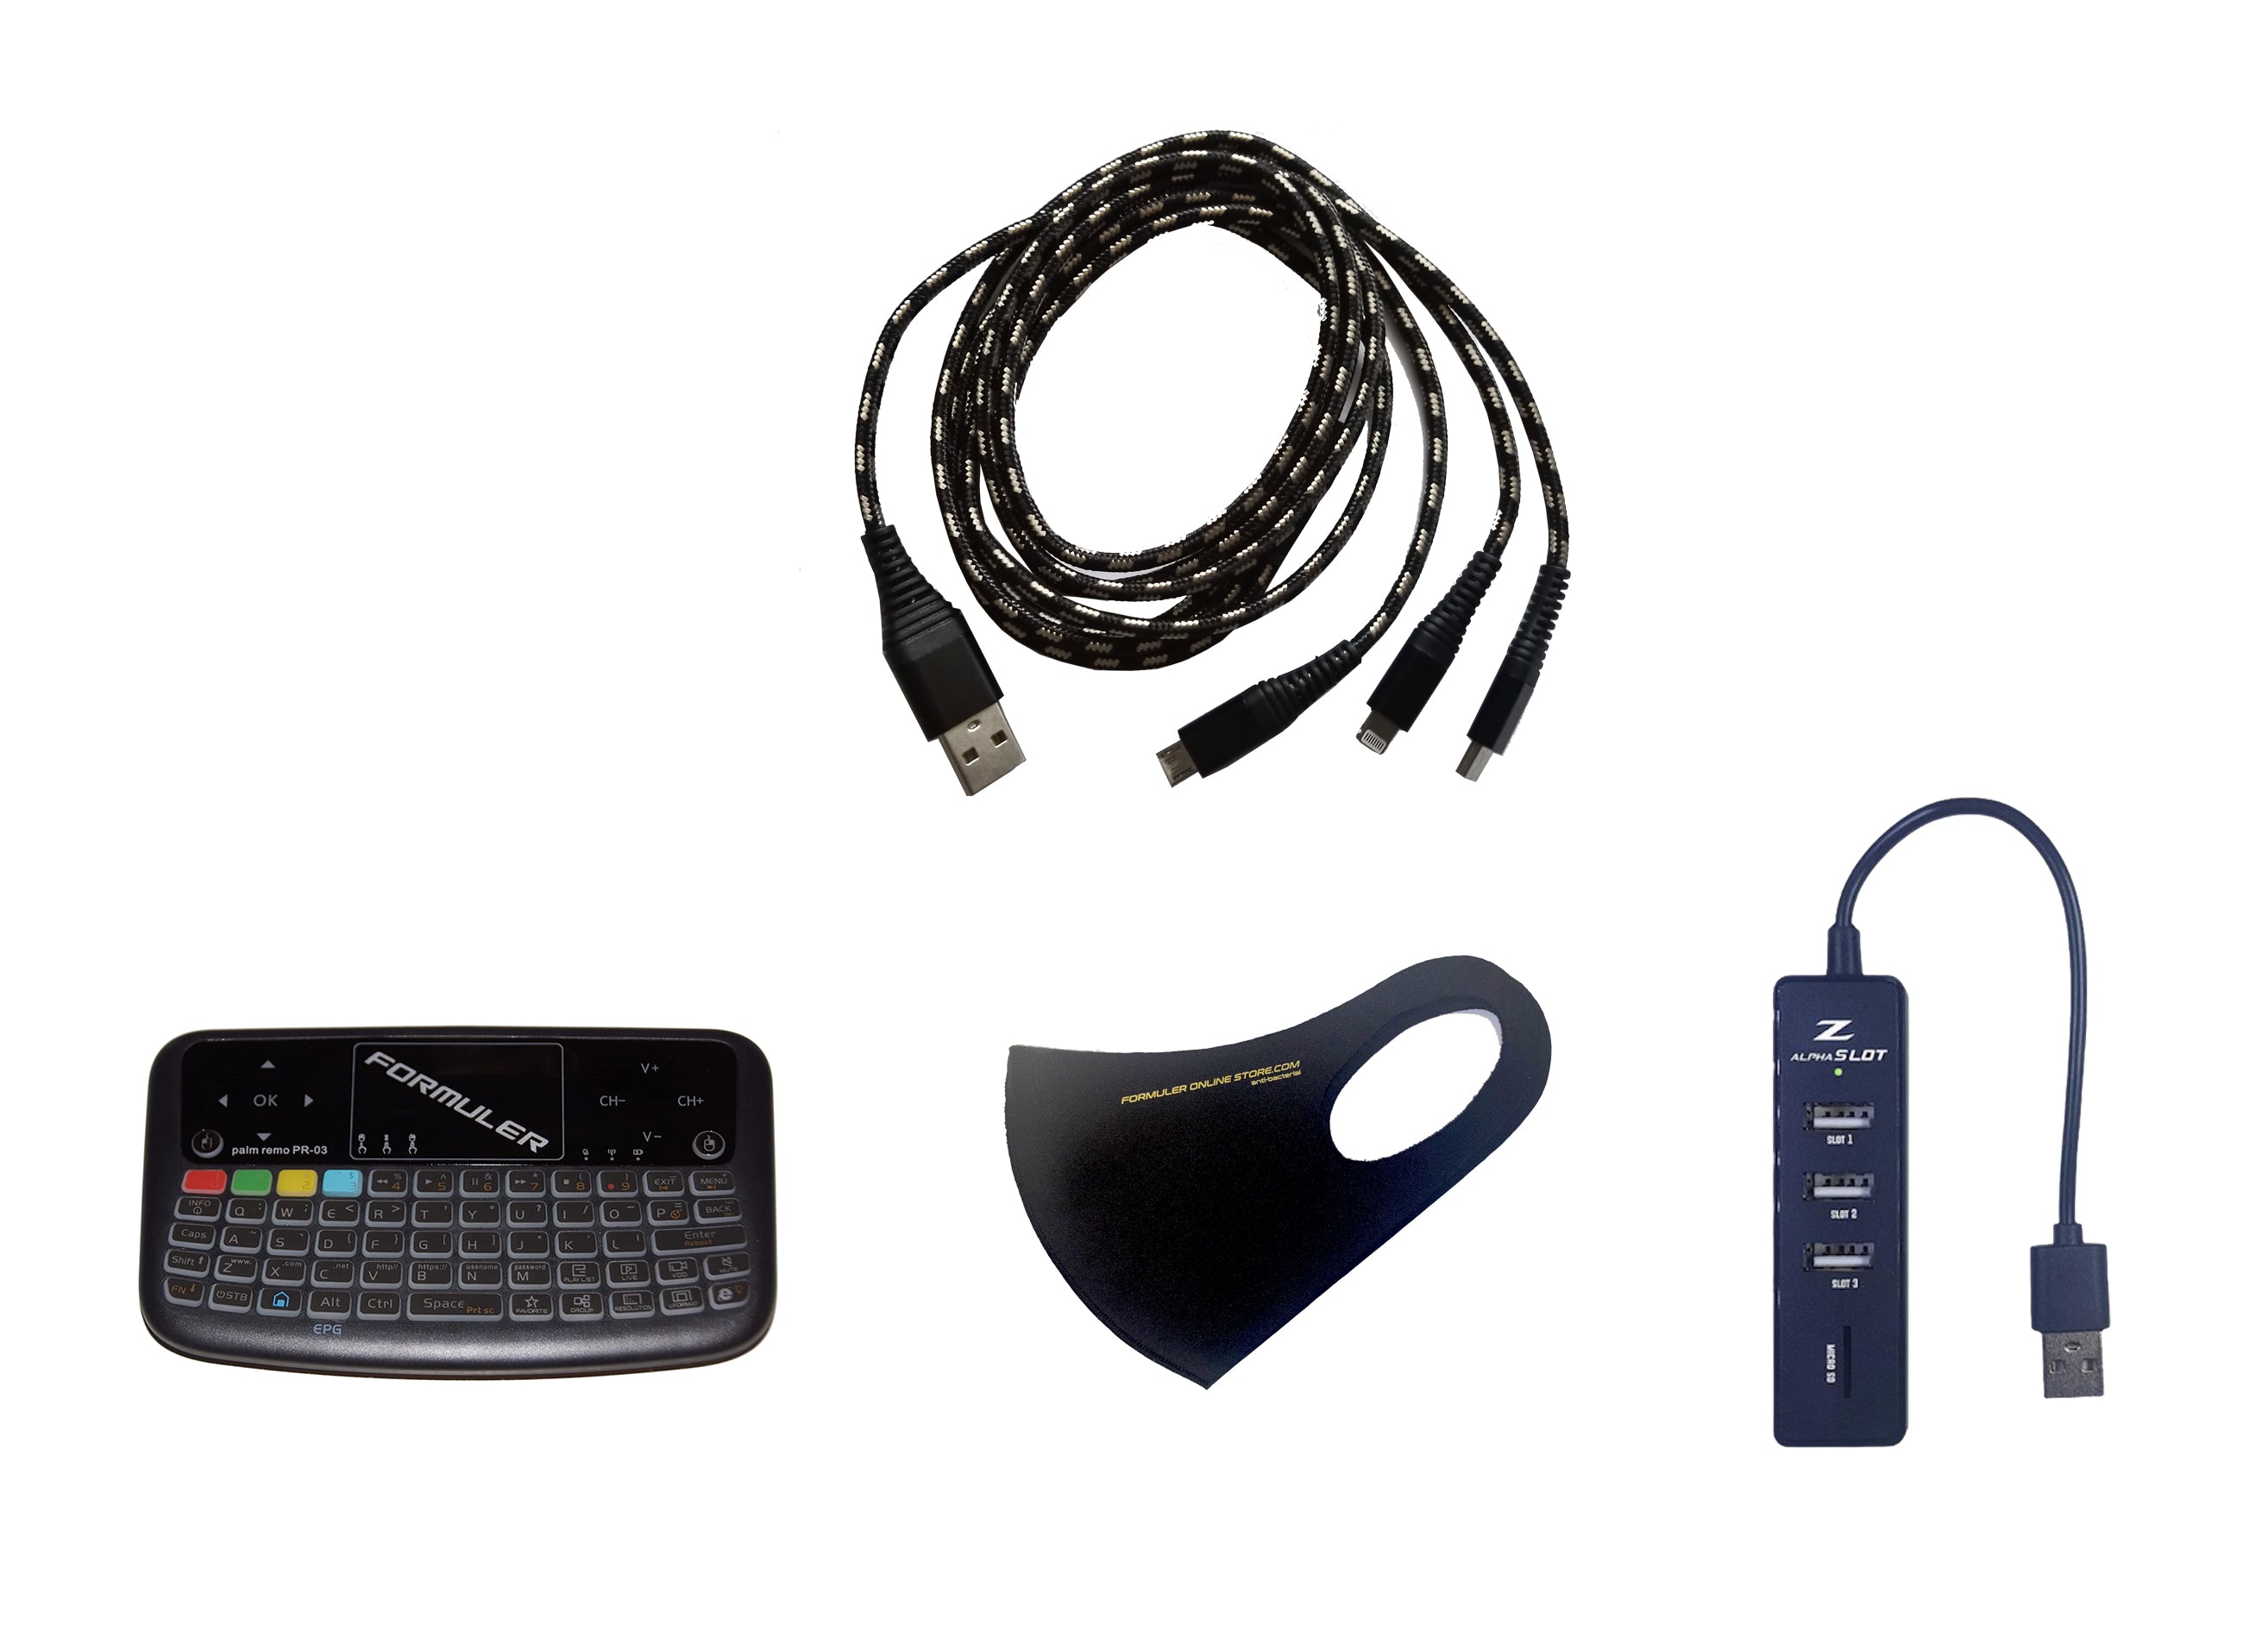 Pacote de acessórios incluído: Mini teclado sem fio com touchpad + Hub USB + Extensão de cabo USB 3-1 + Máscara